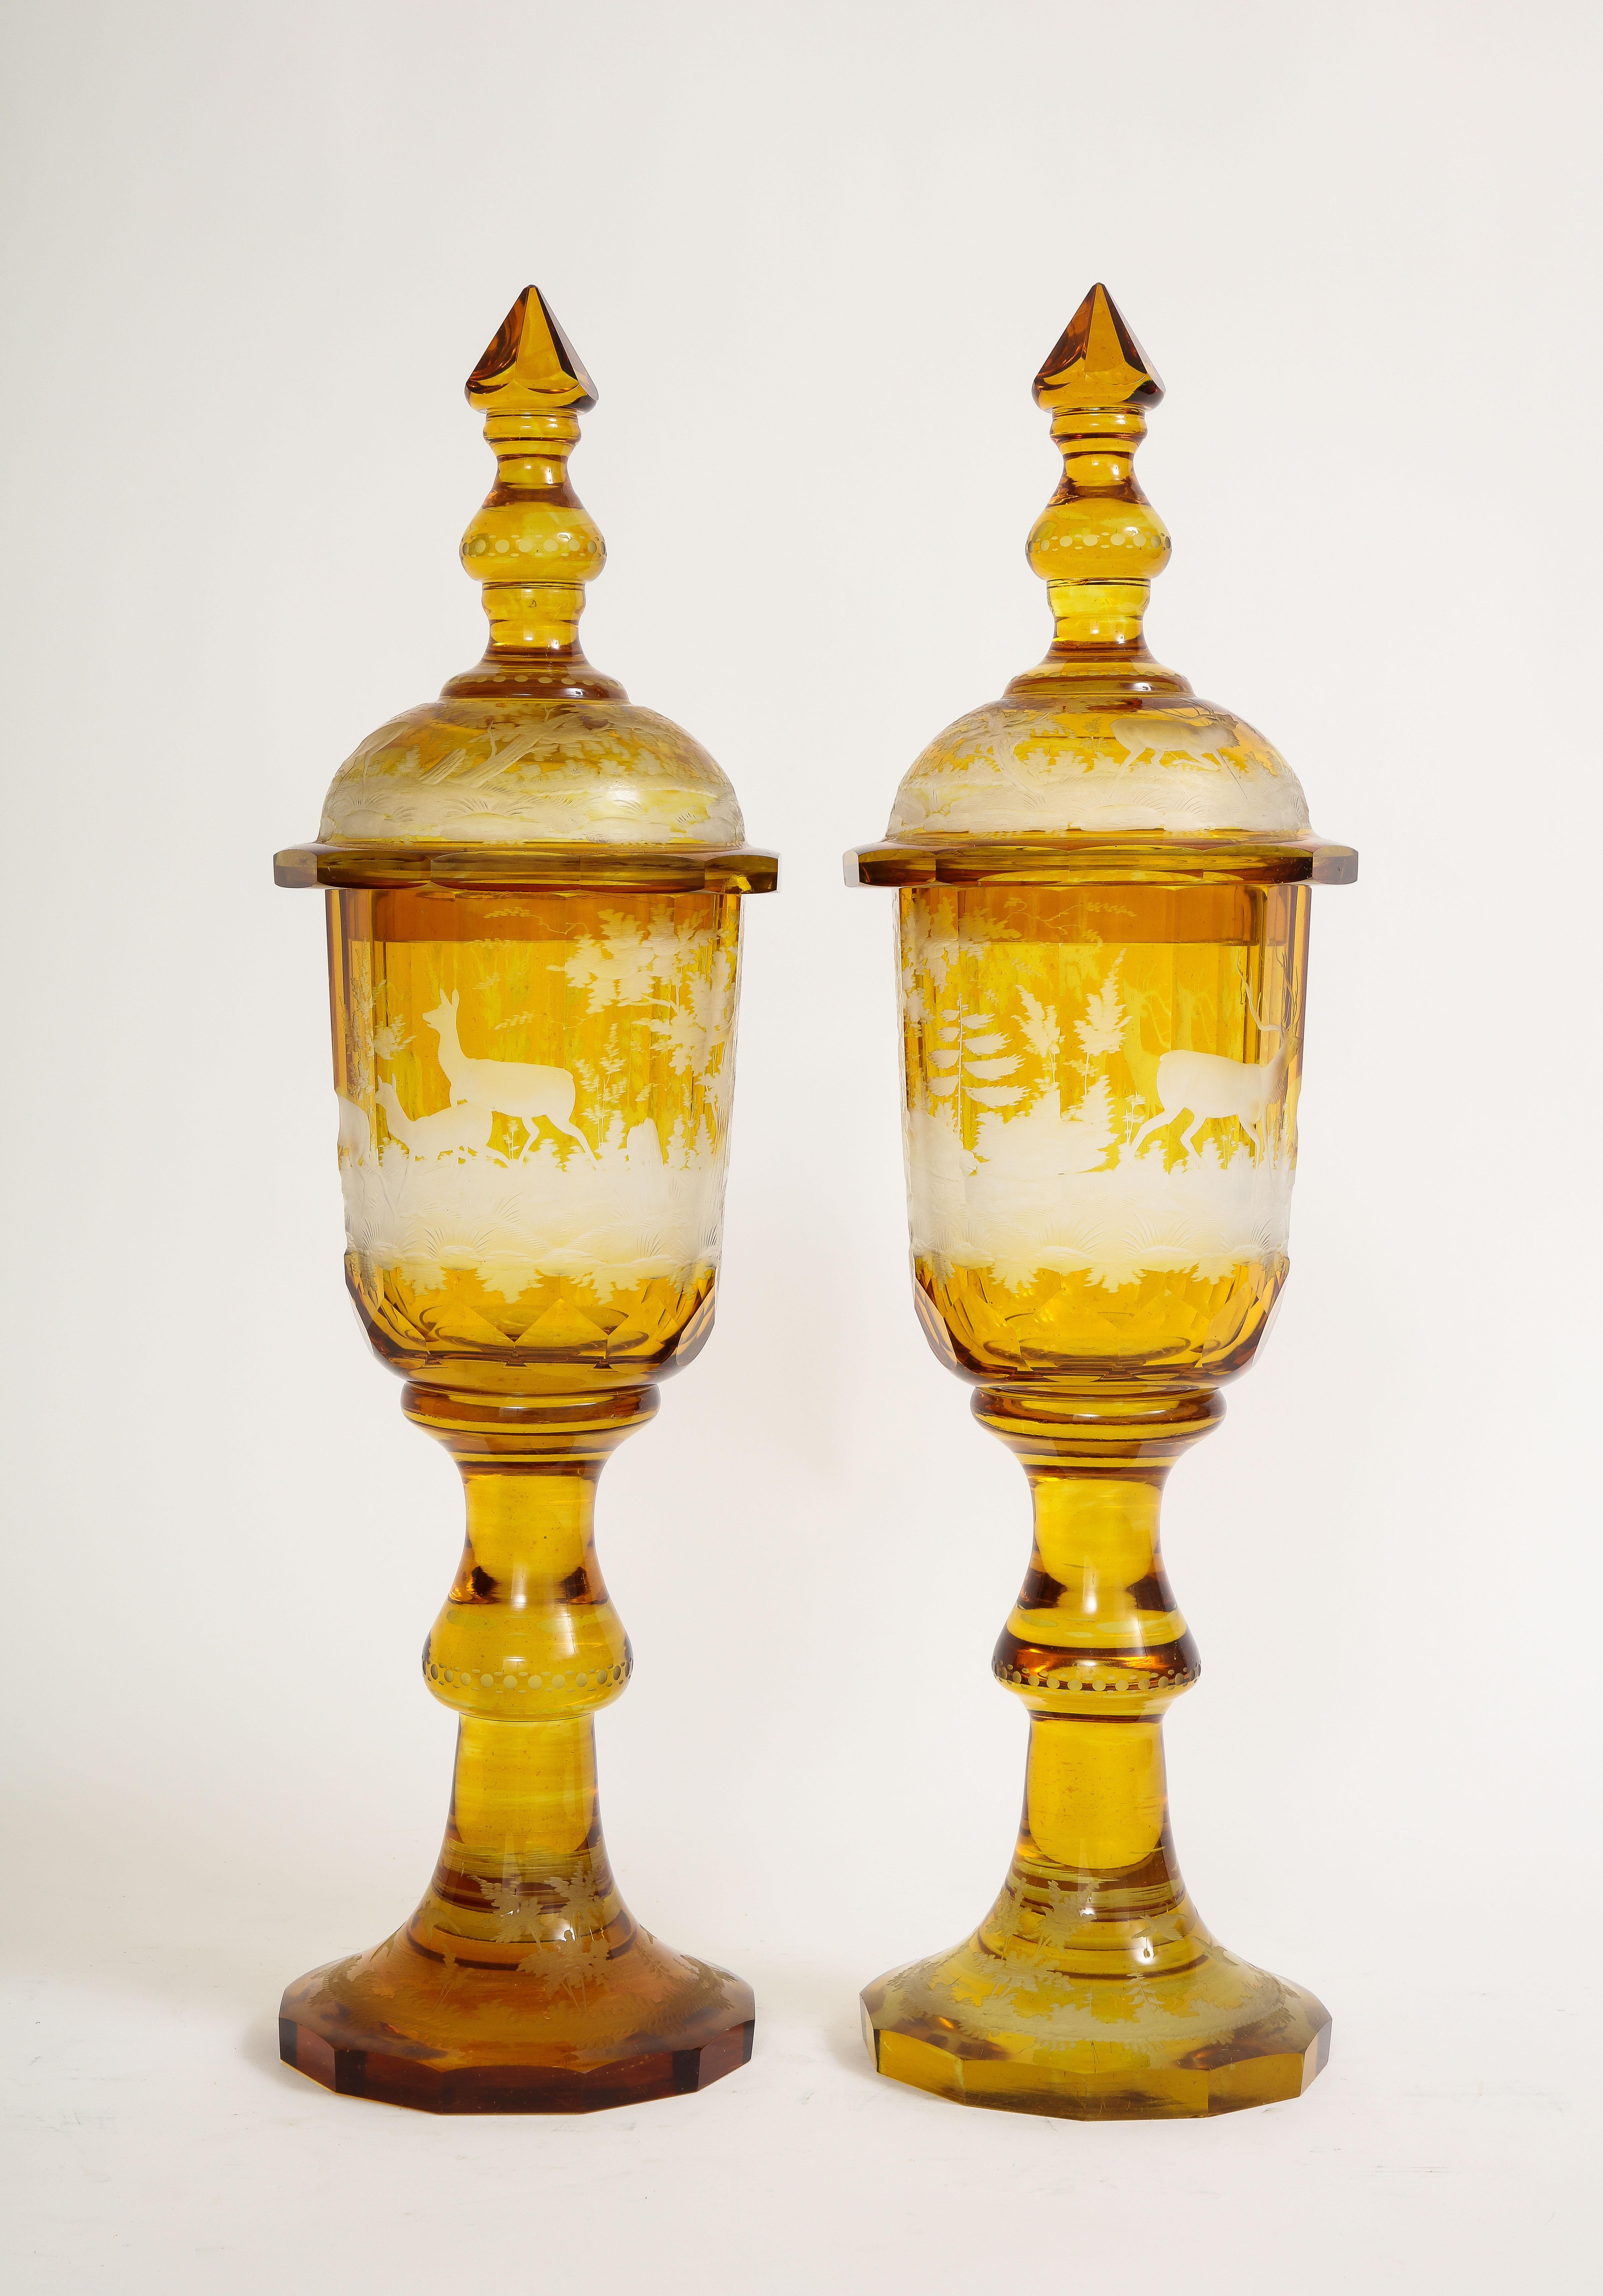 Ein schönes Paar Bernsteinkristall handgeschnitzt und geätzt abgedeckt Pokale aus den 1800er Jahren. Diese außergewöhnlichen böhmischen Kostbarkeiten zeichnen sich durch einen bemerkenswerten Schliff auf klarem Glas aus, das mit einer fesselnden